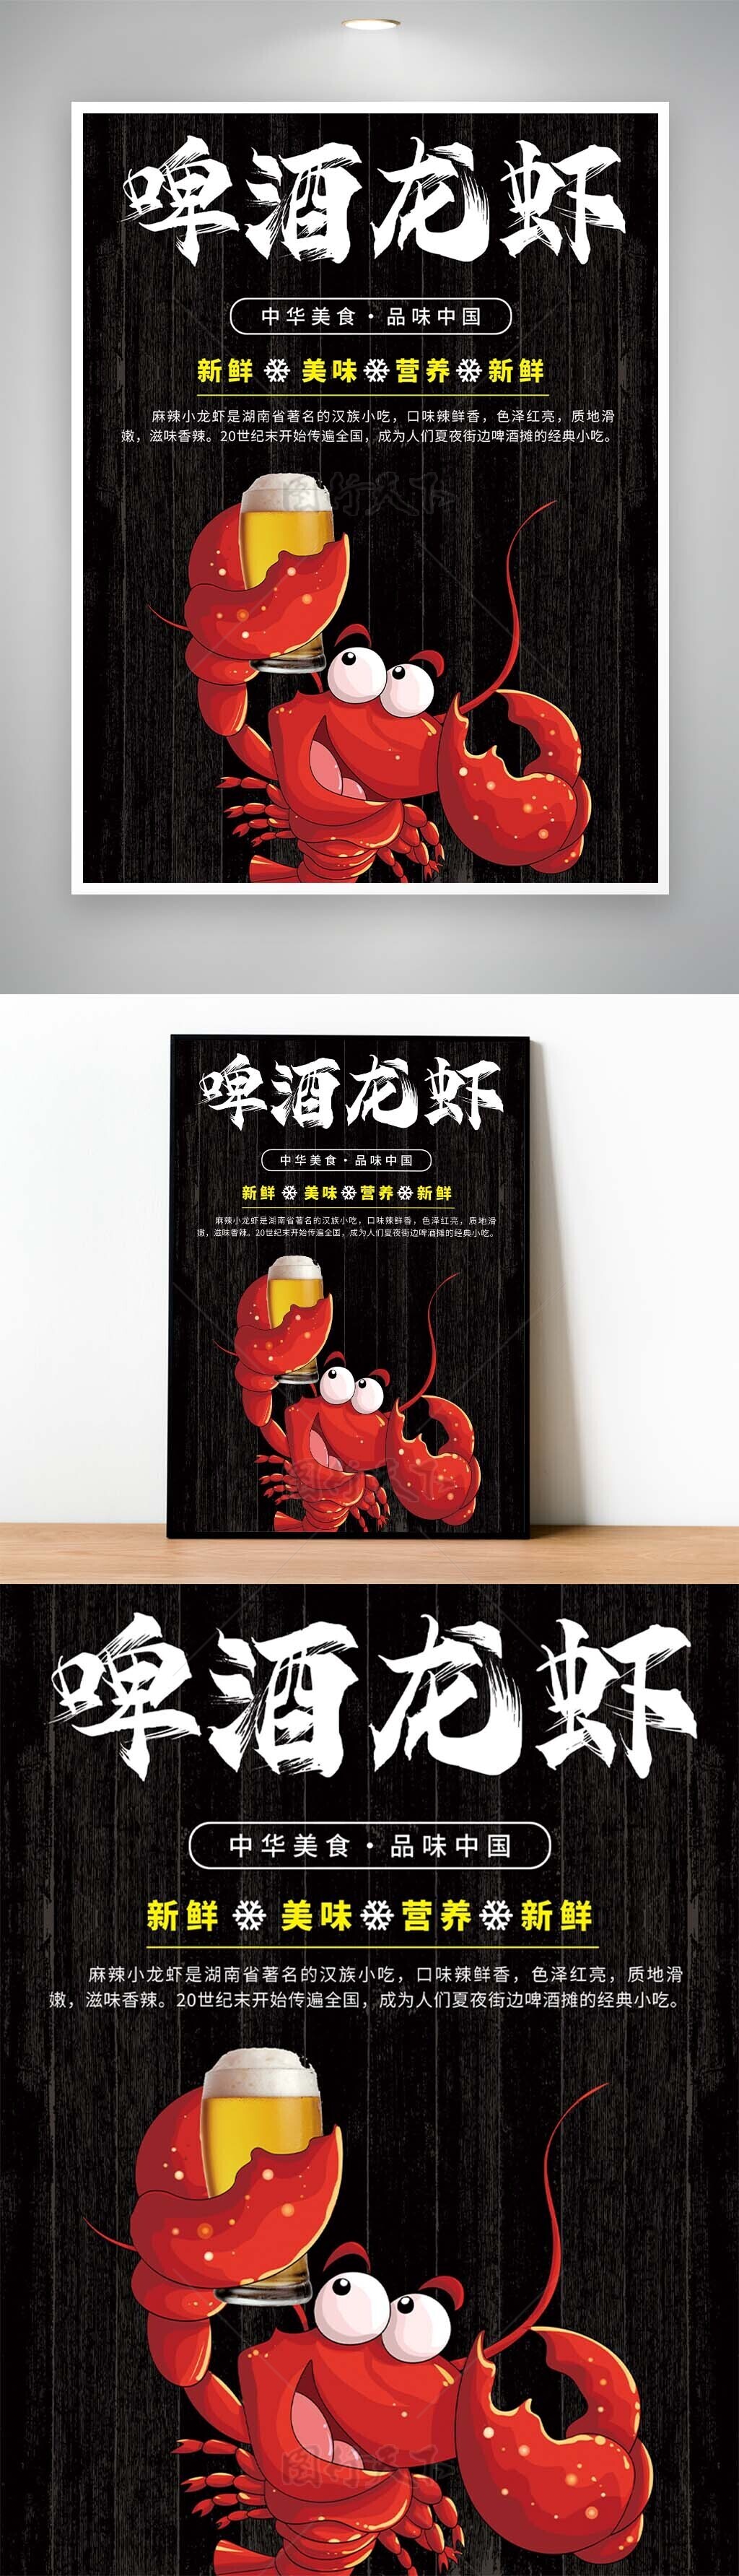 中华美食品味中国啤酒龙虾漫画宣传海报